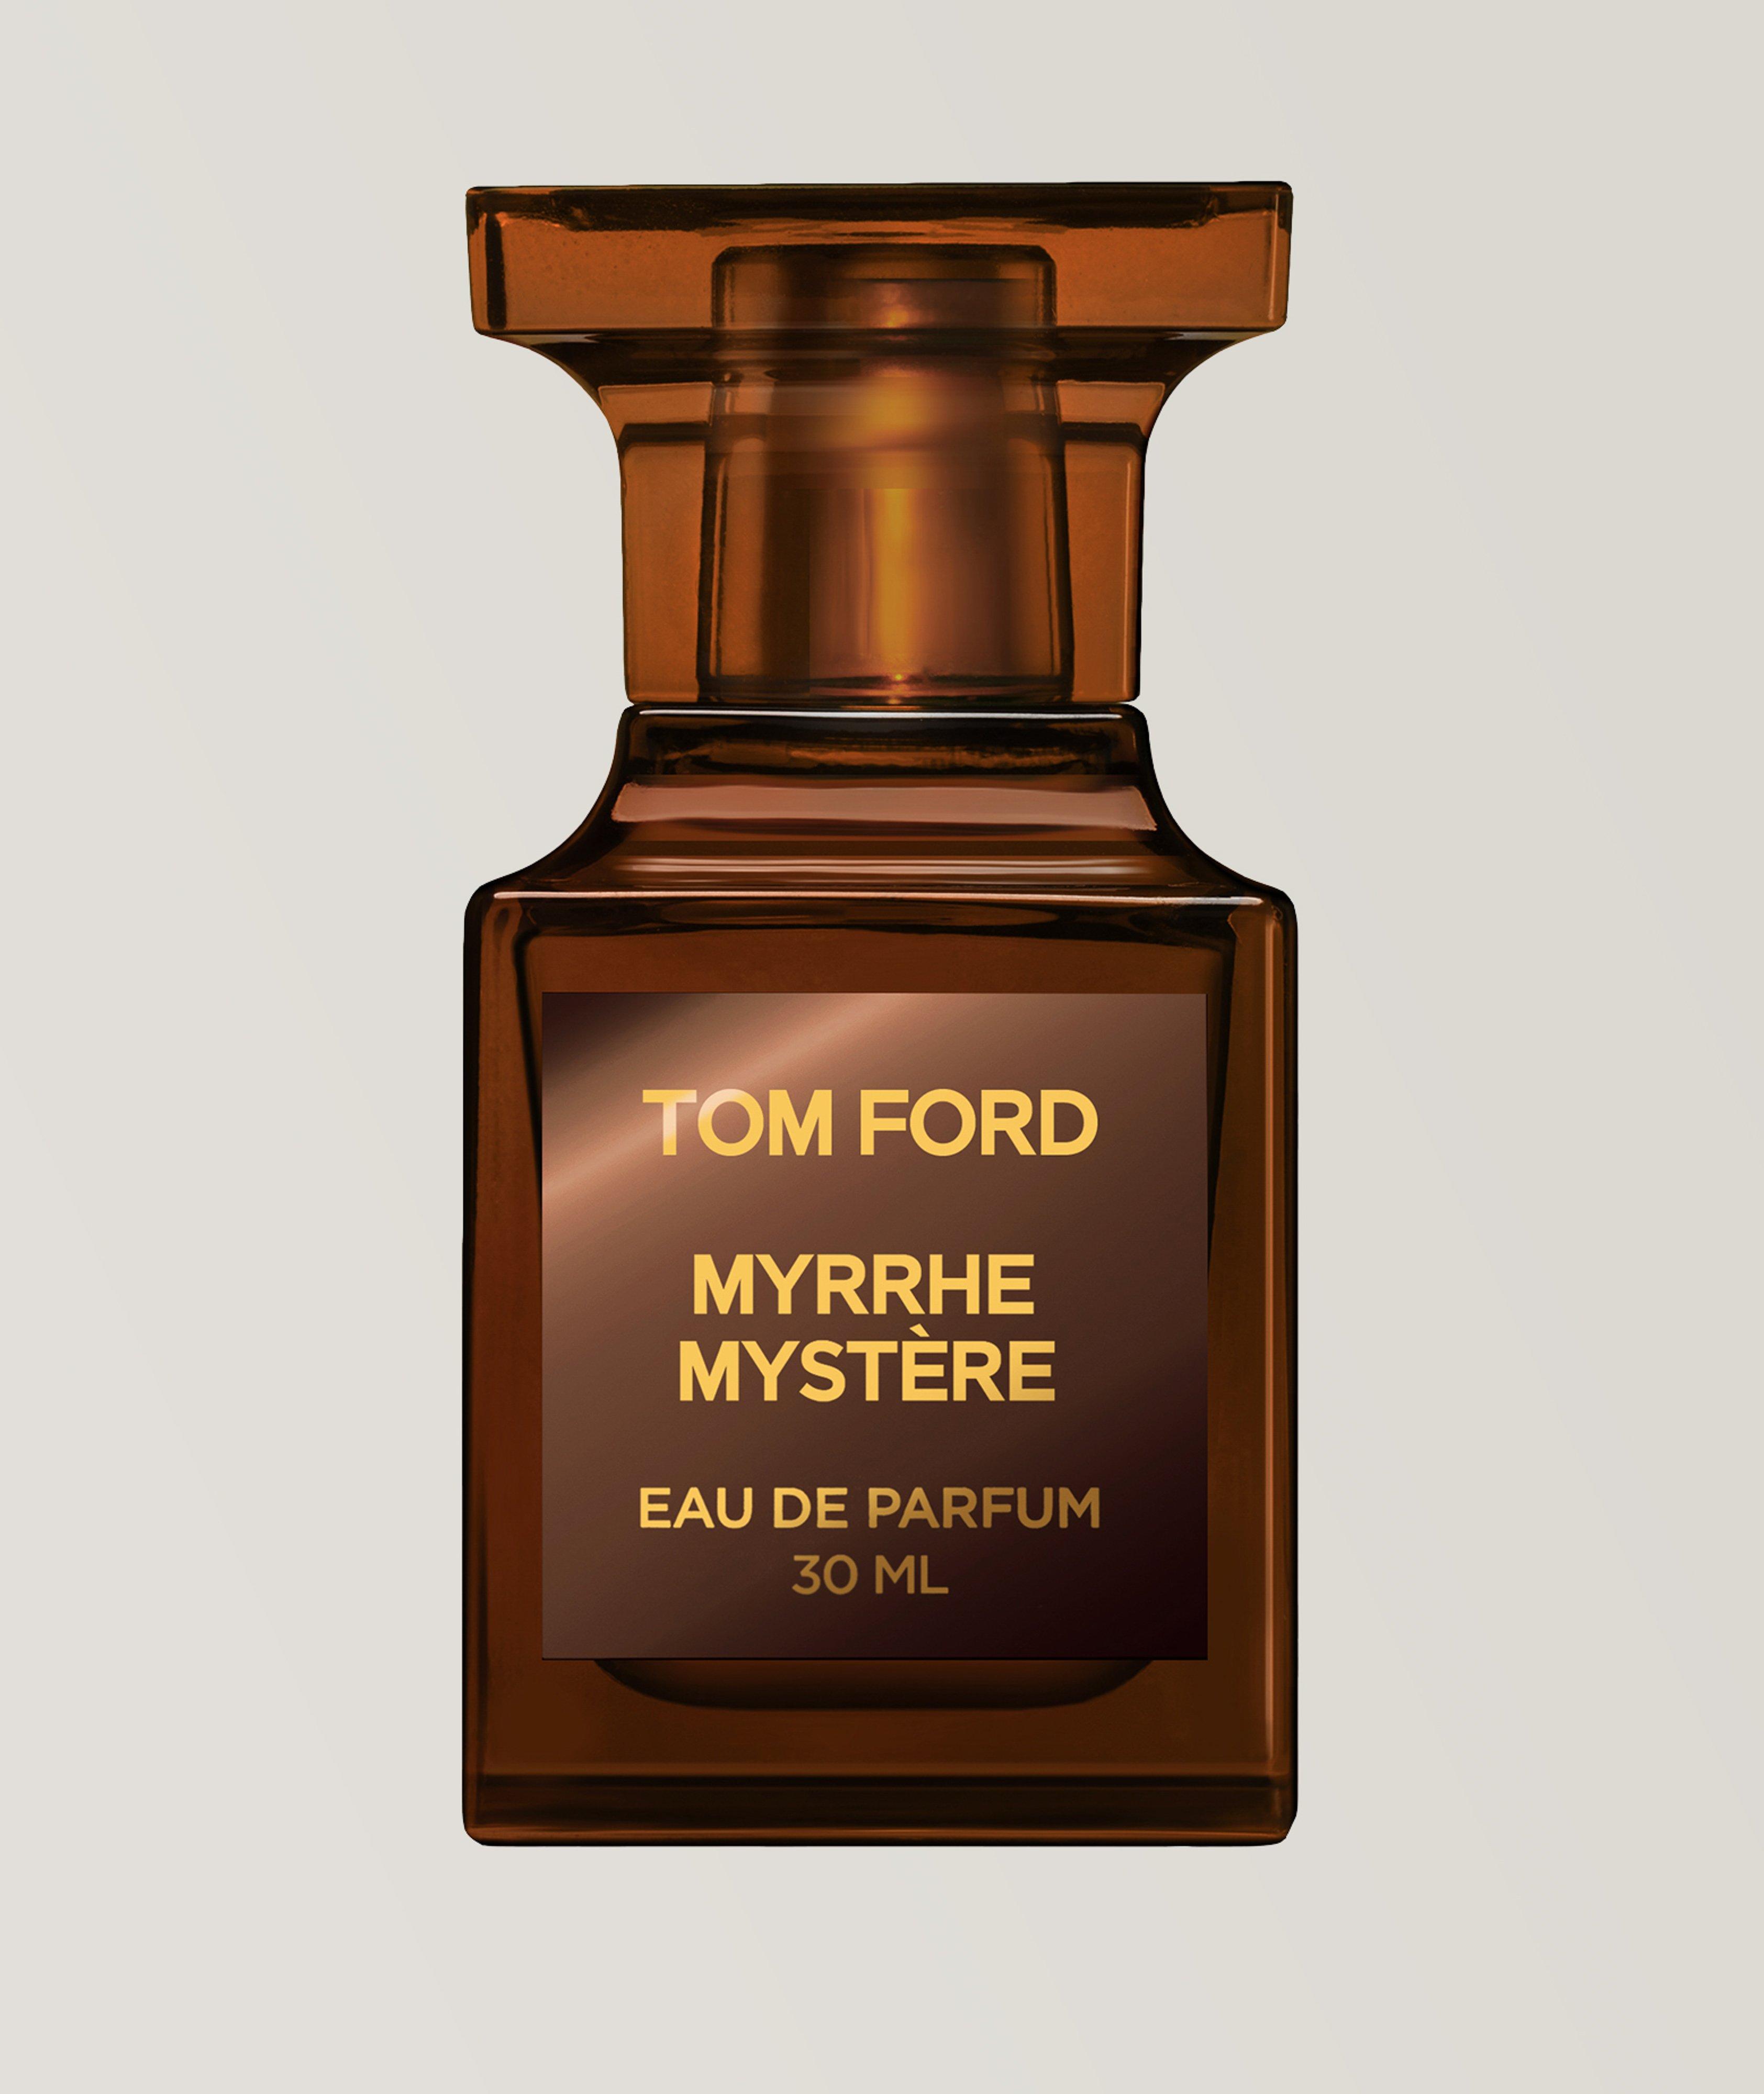 Eau de parfum Myrrhe mystère (30 ml) image 0